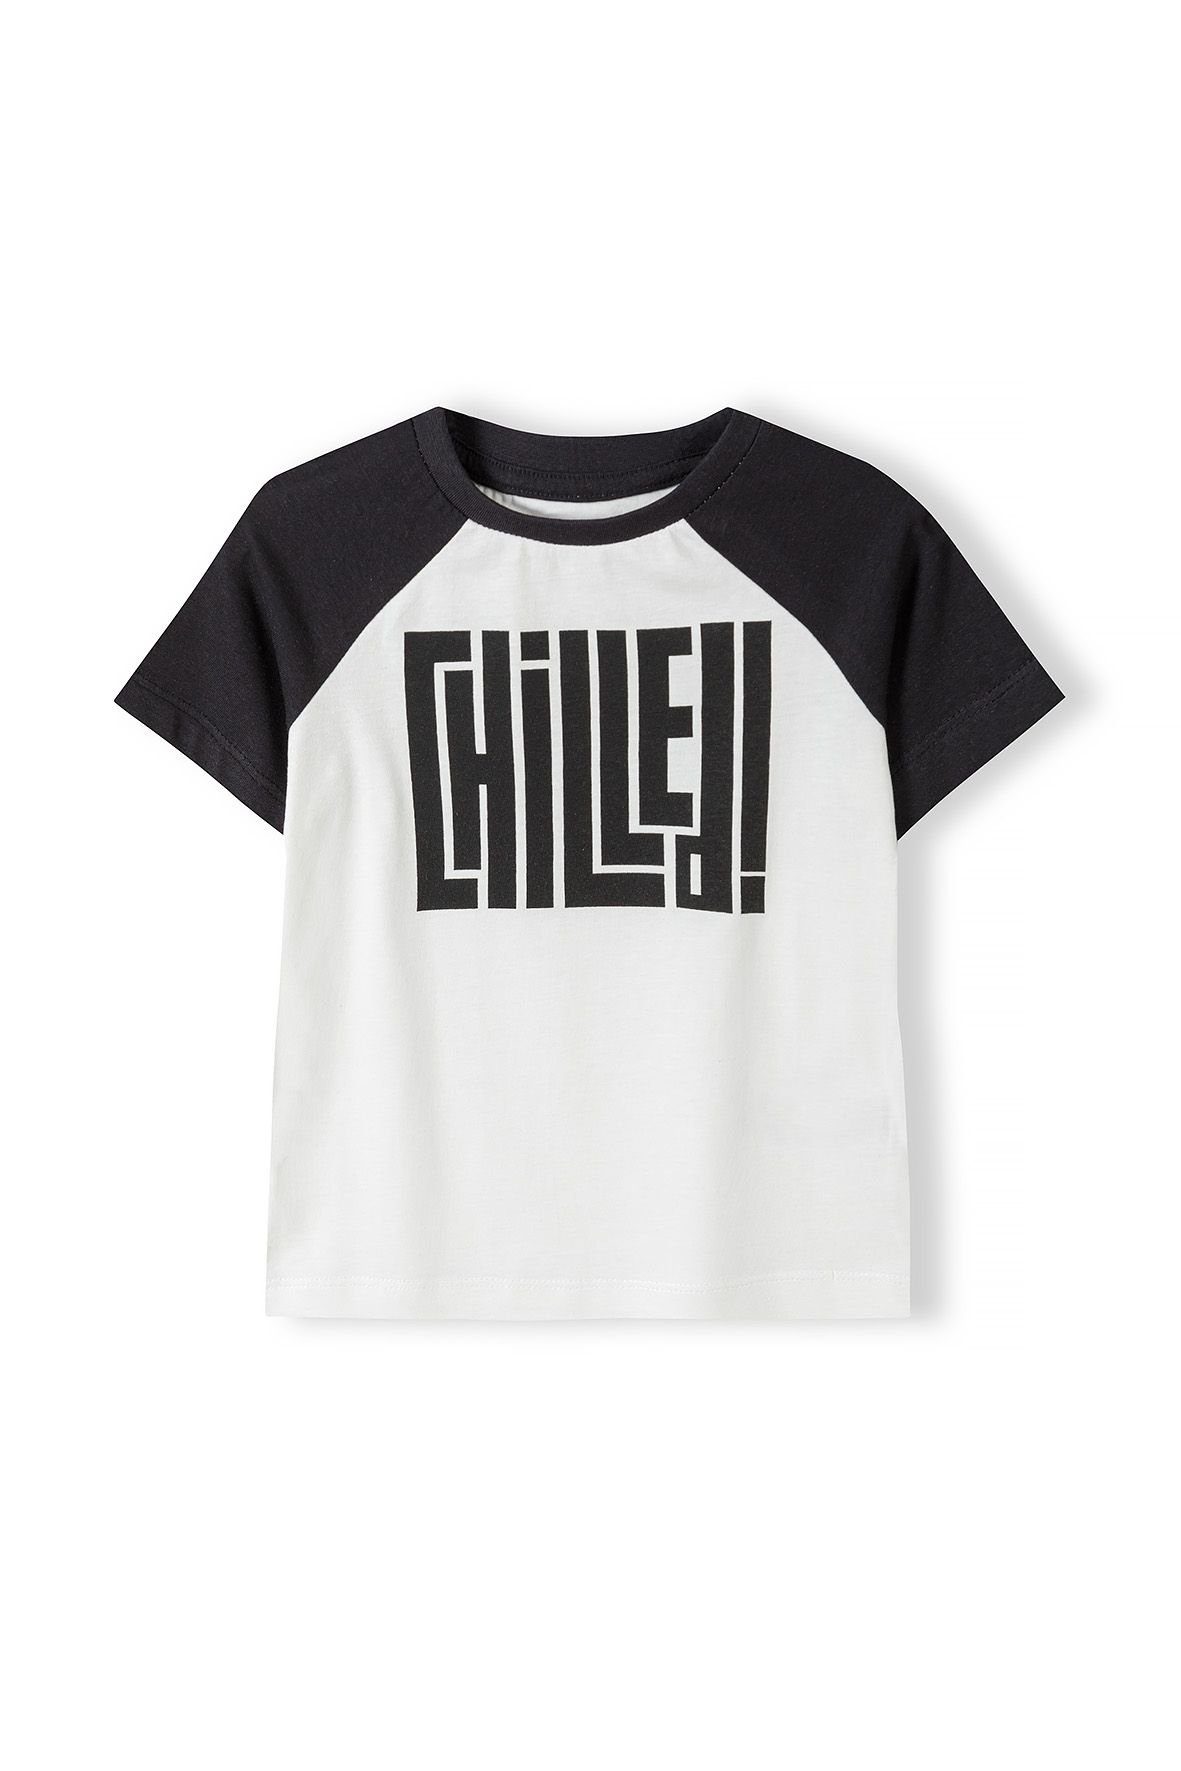 MINOTI T-Shirt Sommer T-Shirt mit bunten Ärmeln (3y-14y) Cremeweiß | T-Shirts